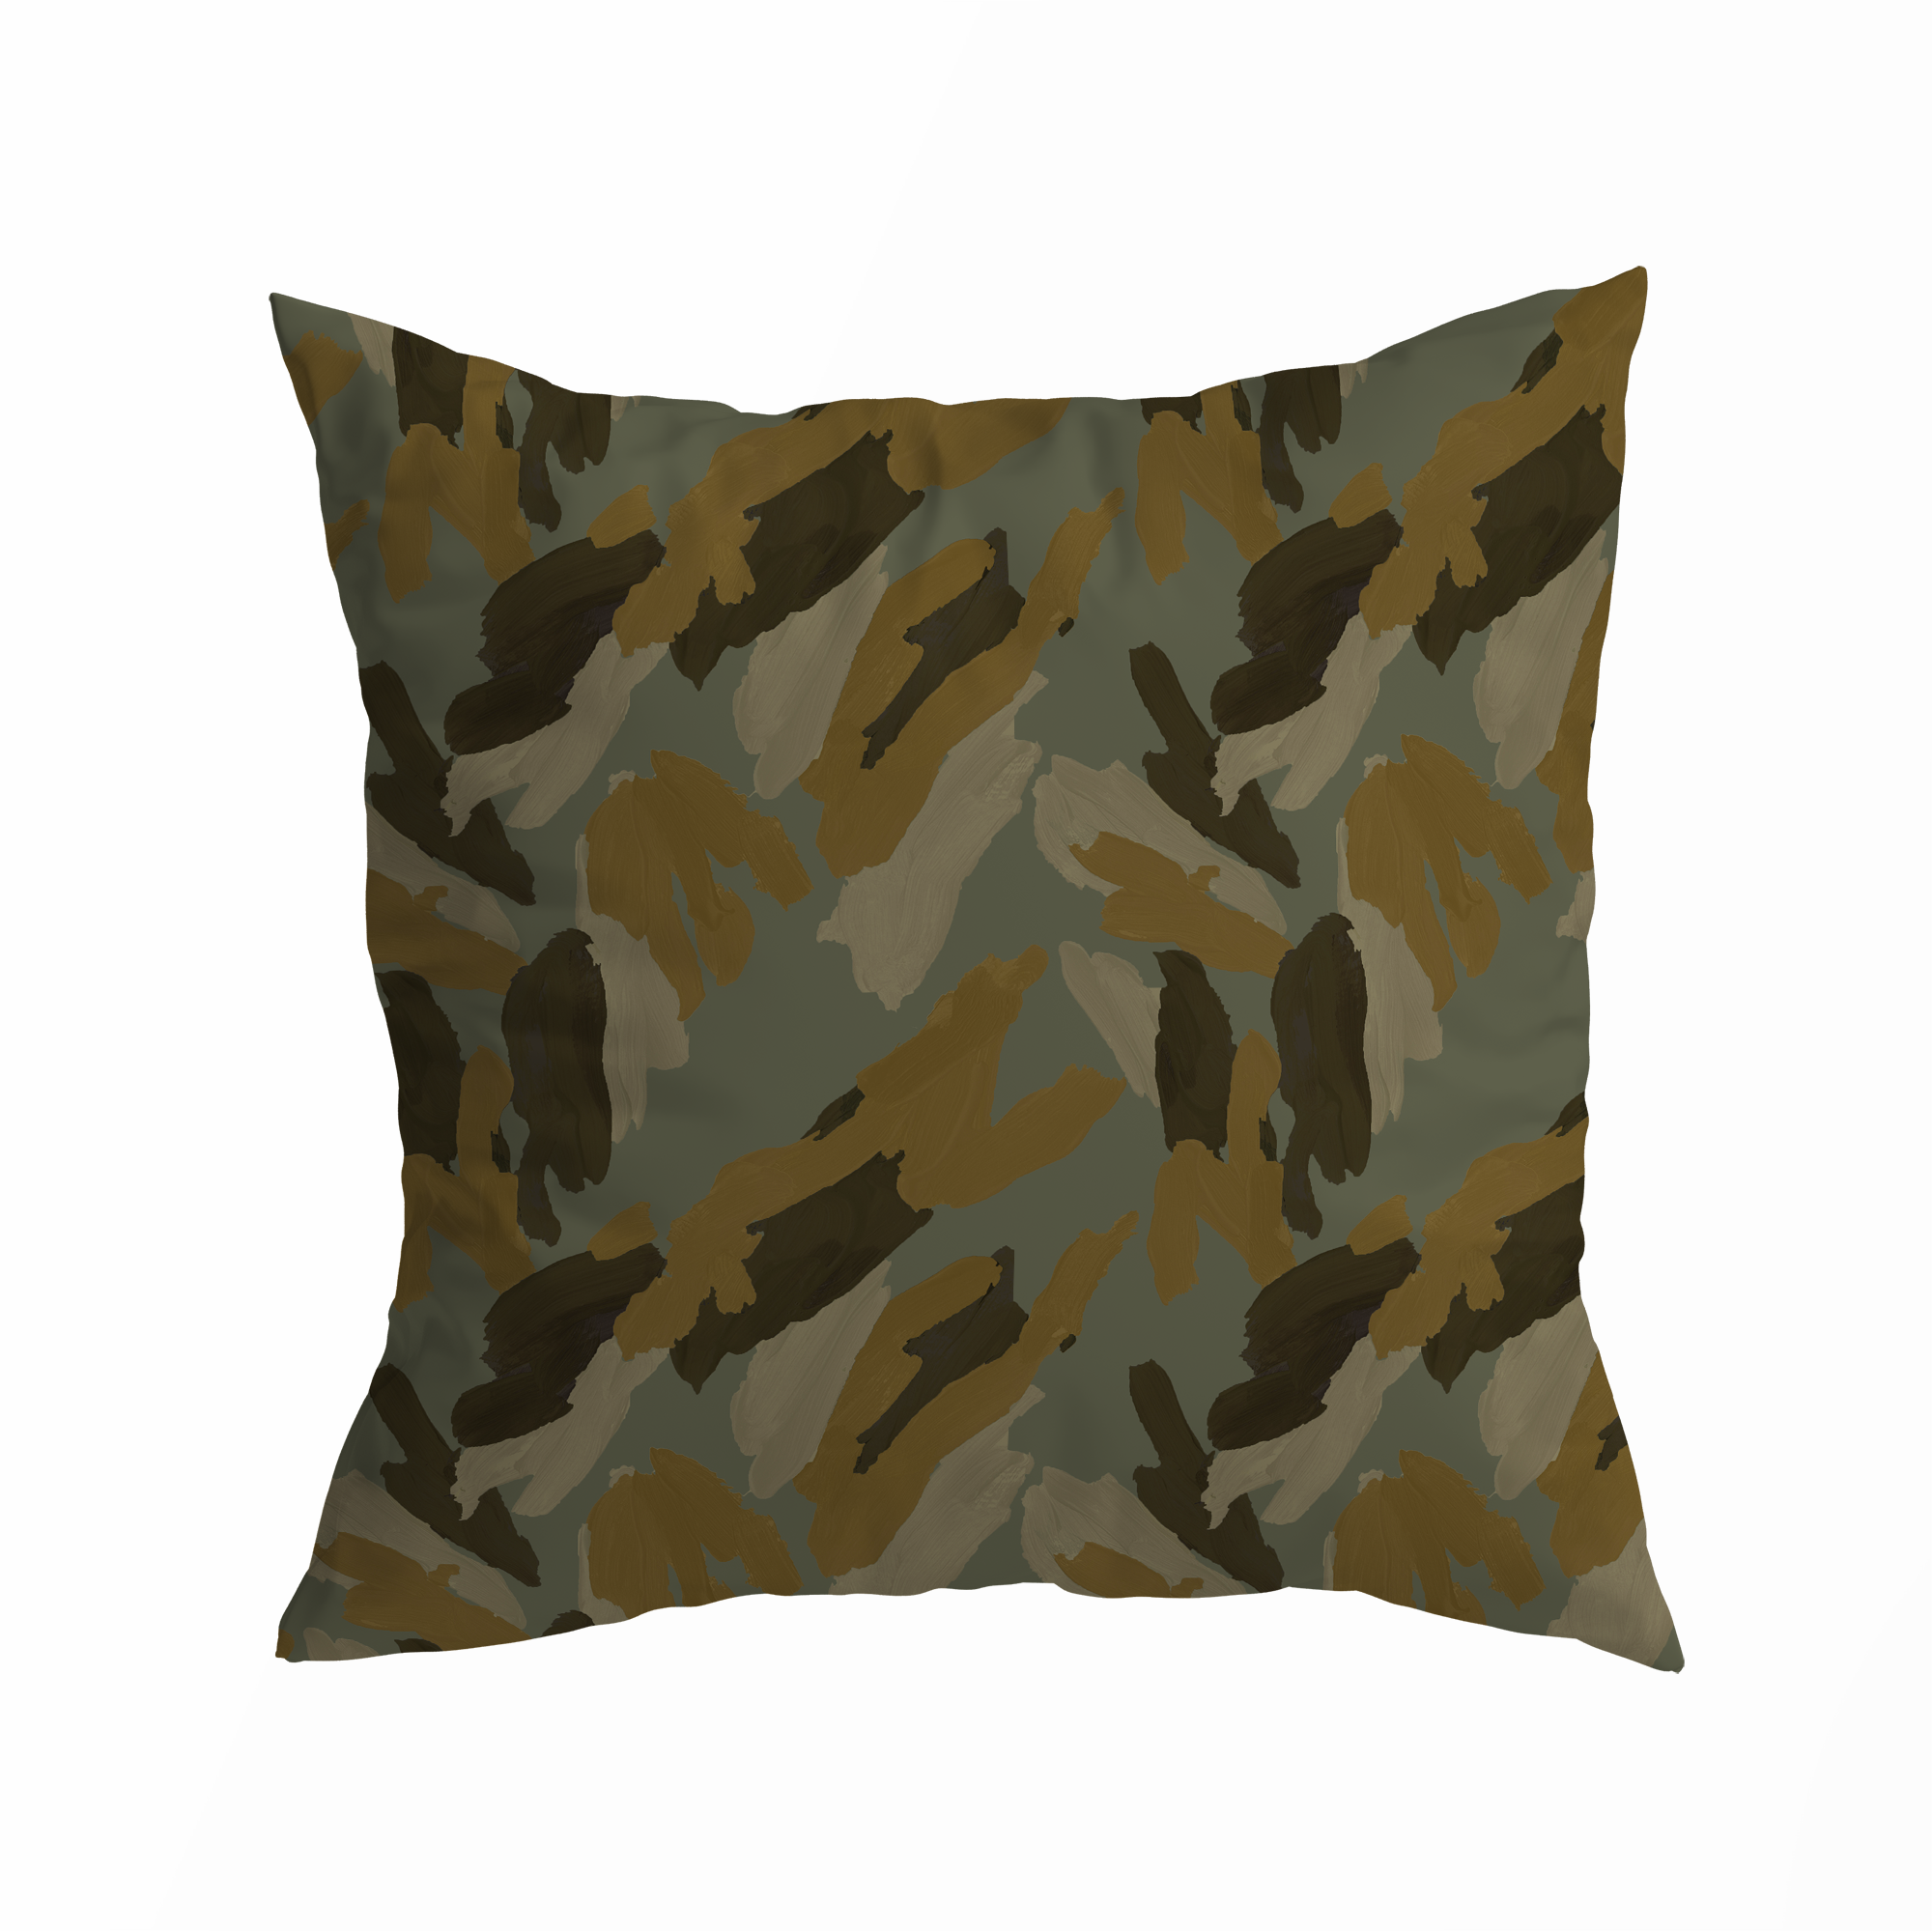 772. Camouflage I